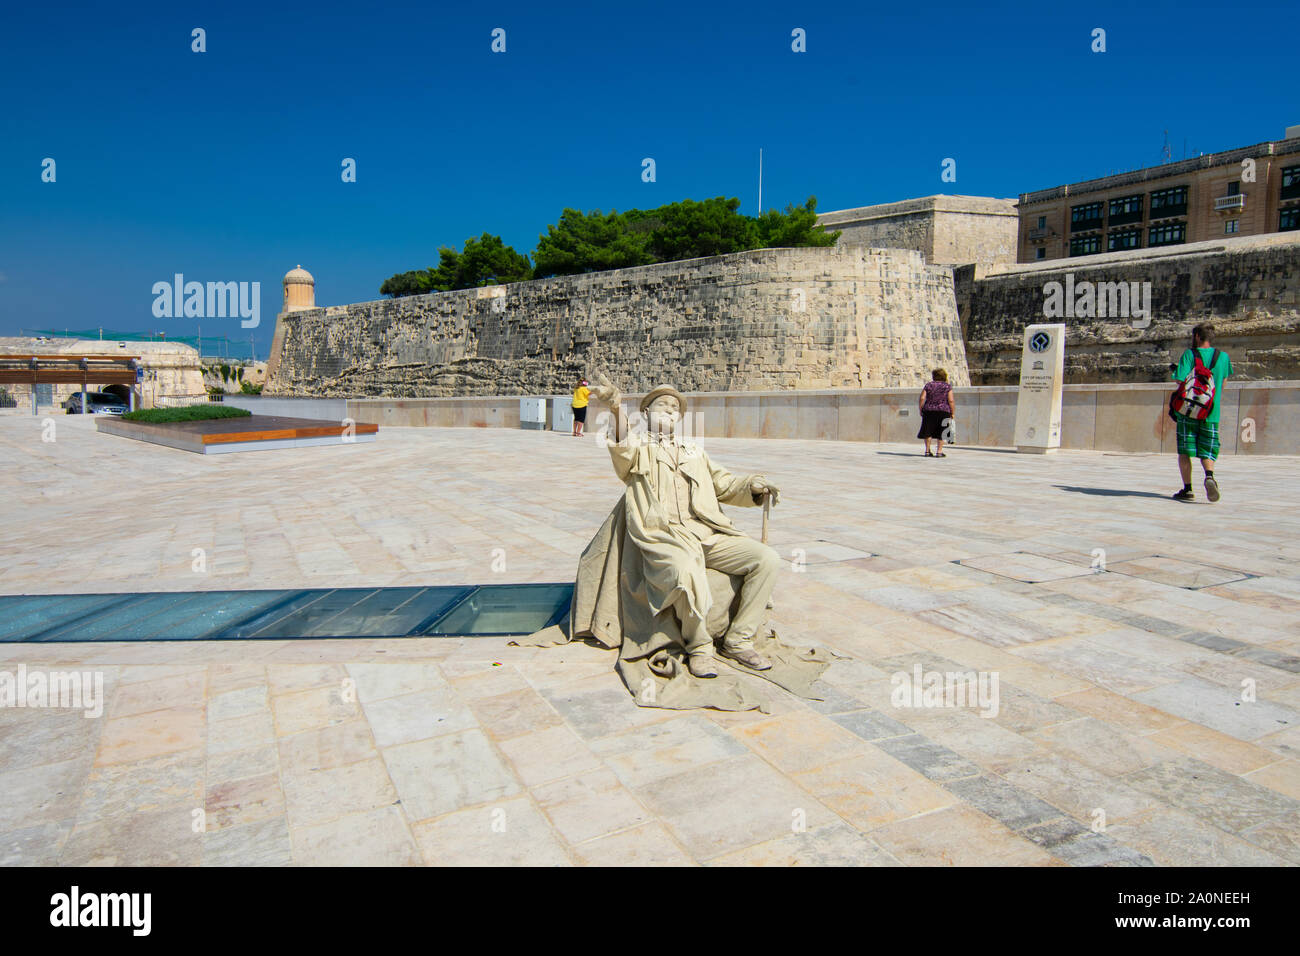 A human statue in a square in Valletta, Malta Stock Photo